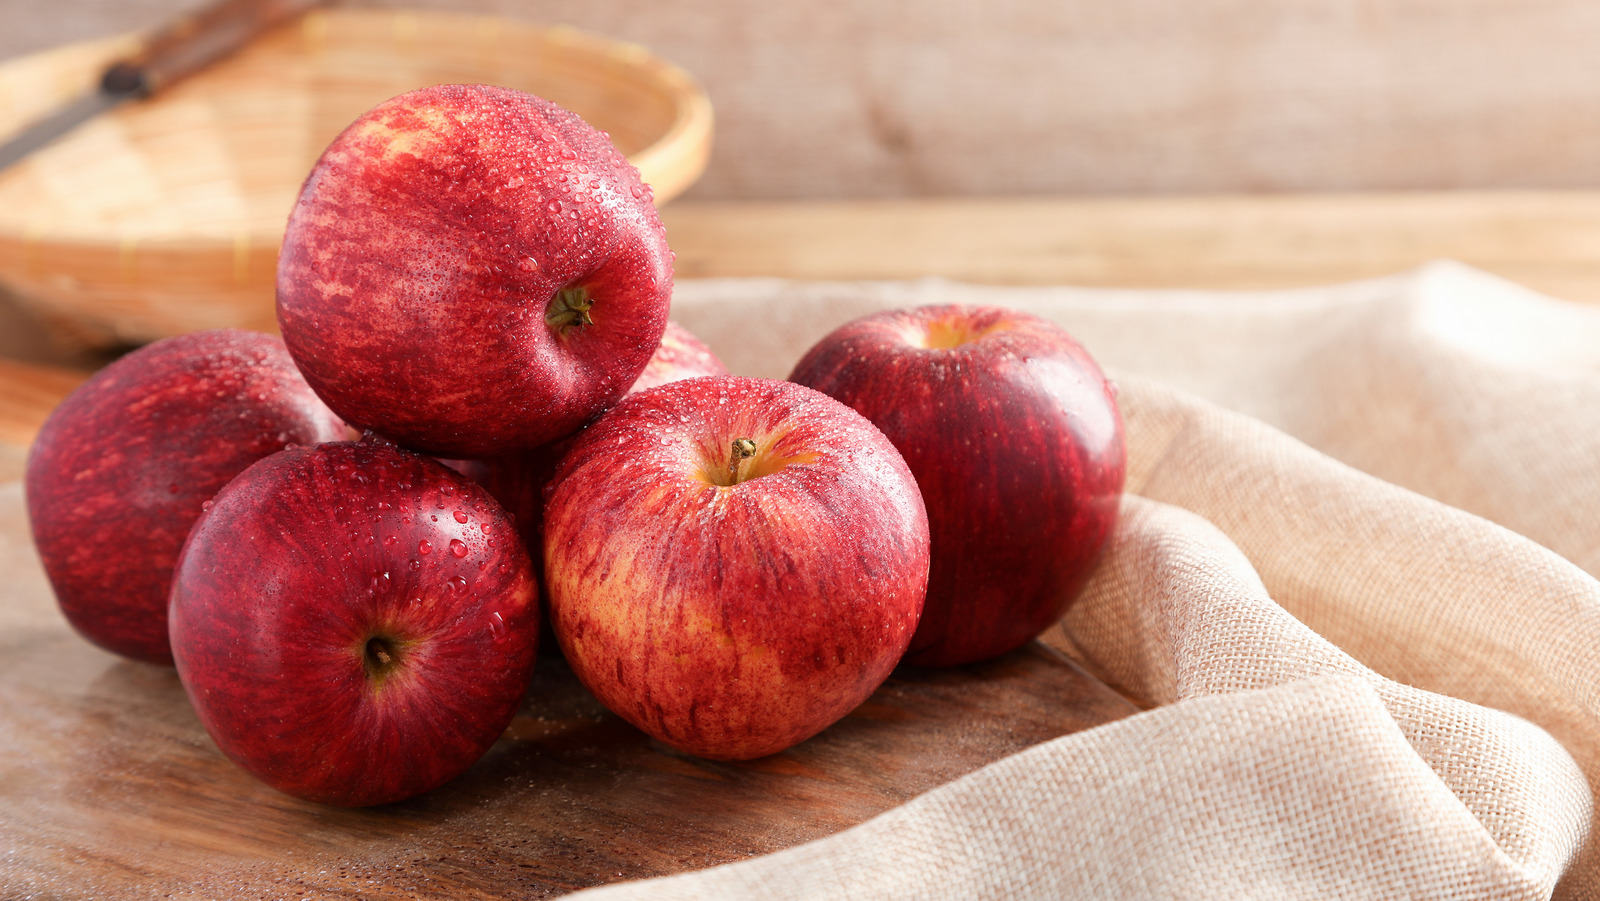 Cum păstrezi merele proaspete în congelator. Doar așa rezistă mai mult timp